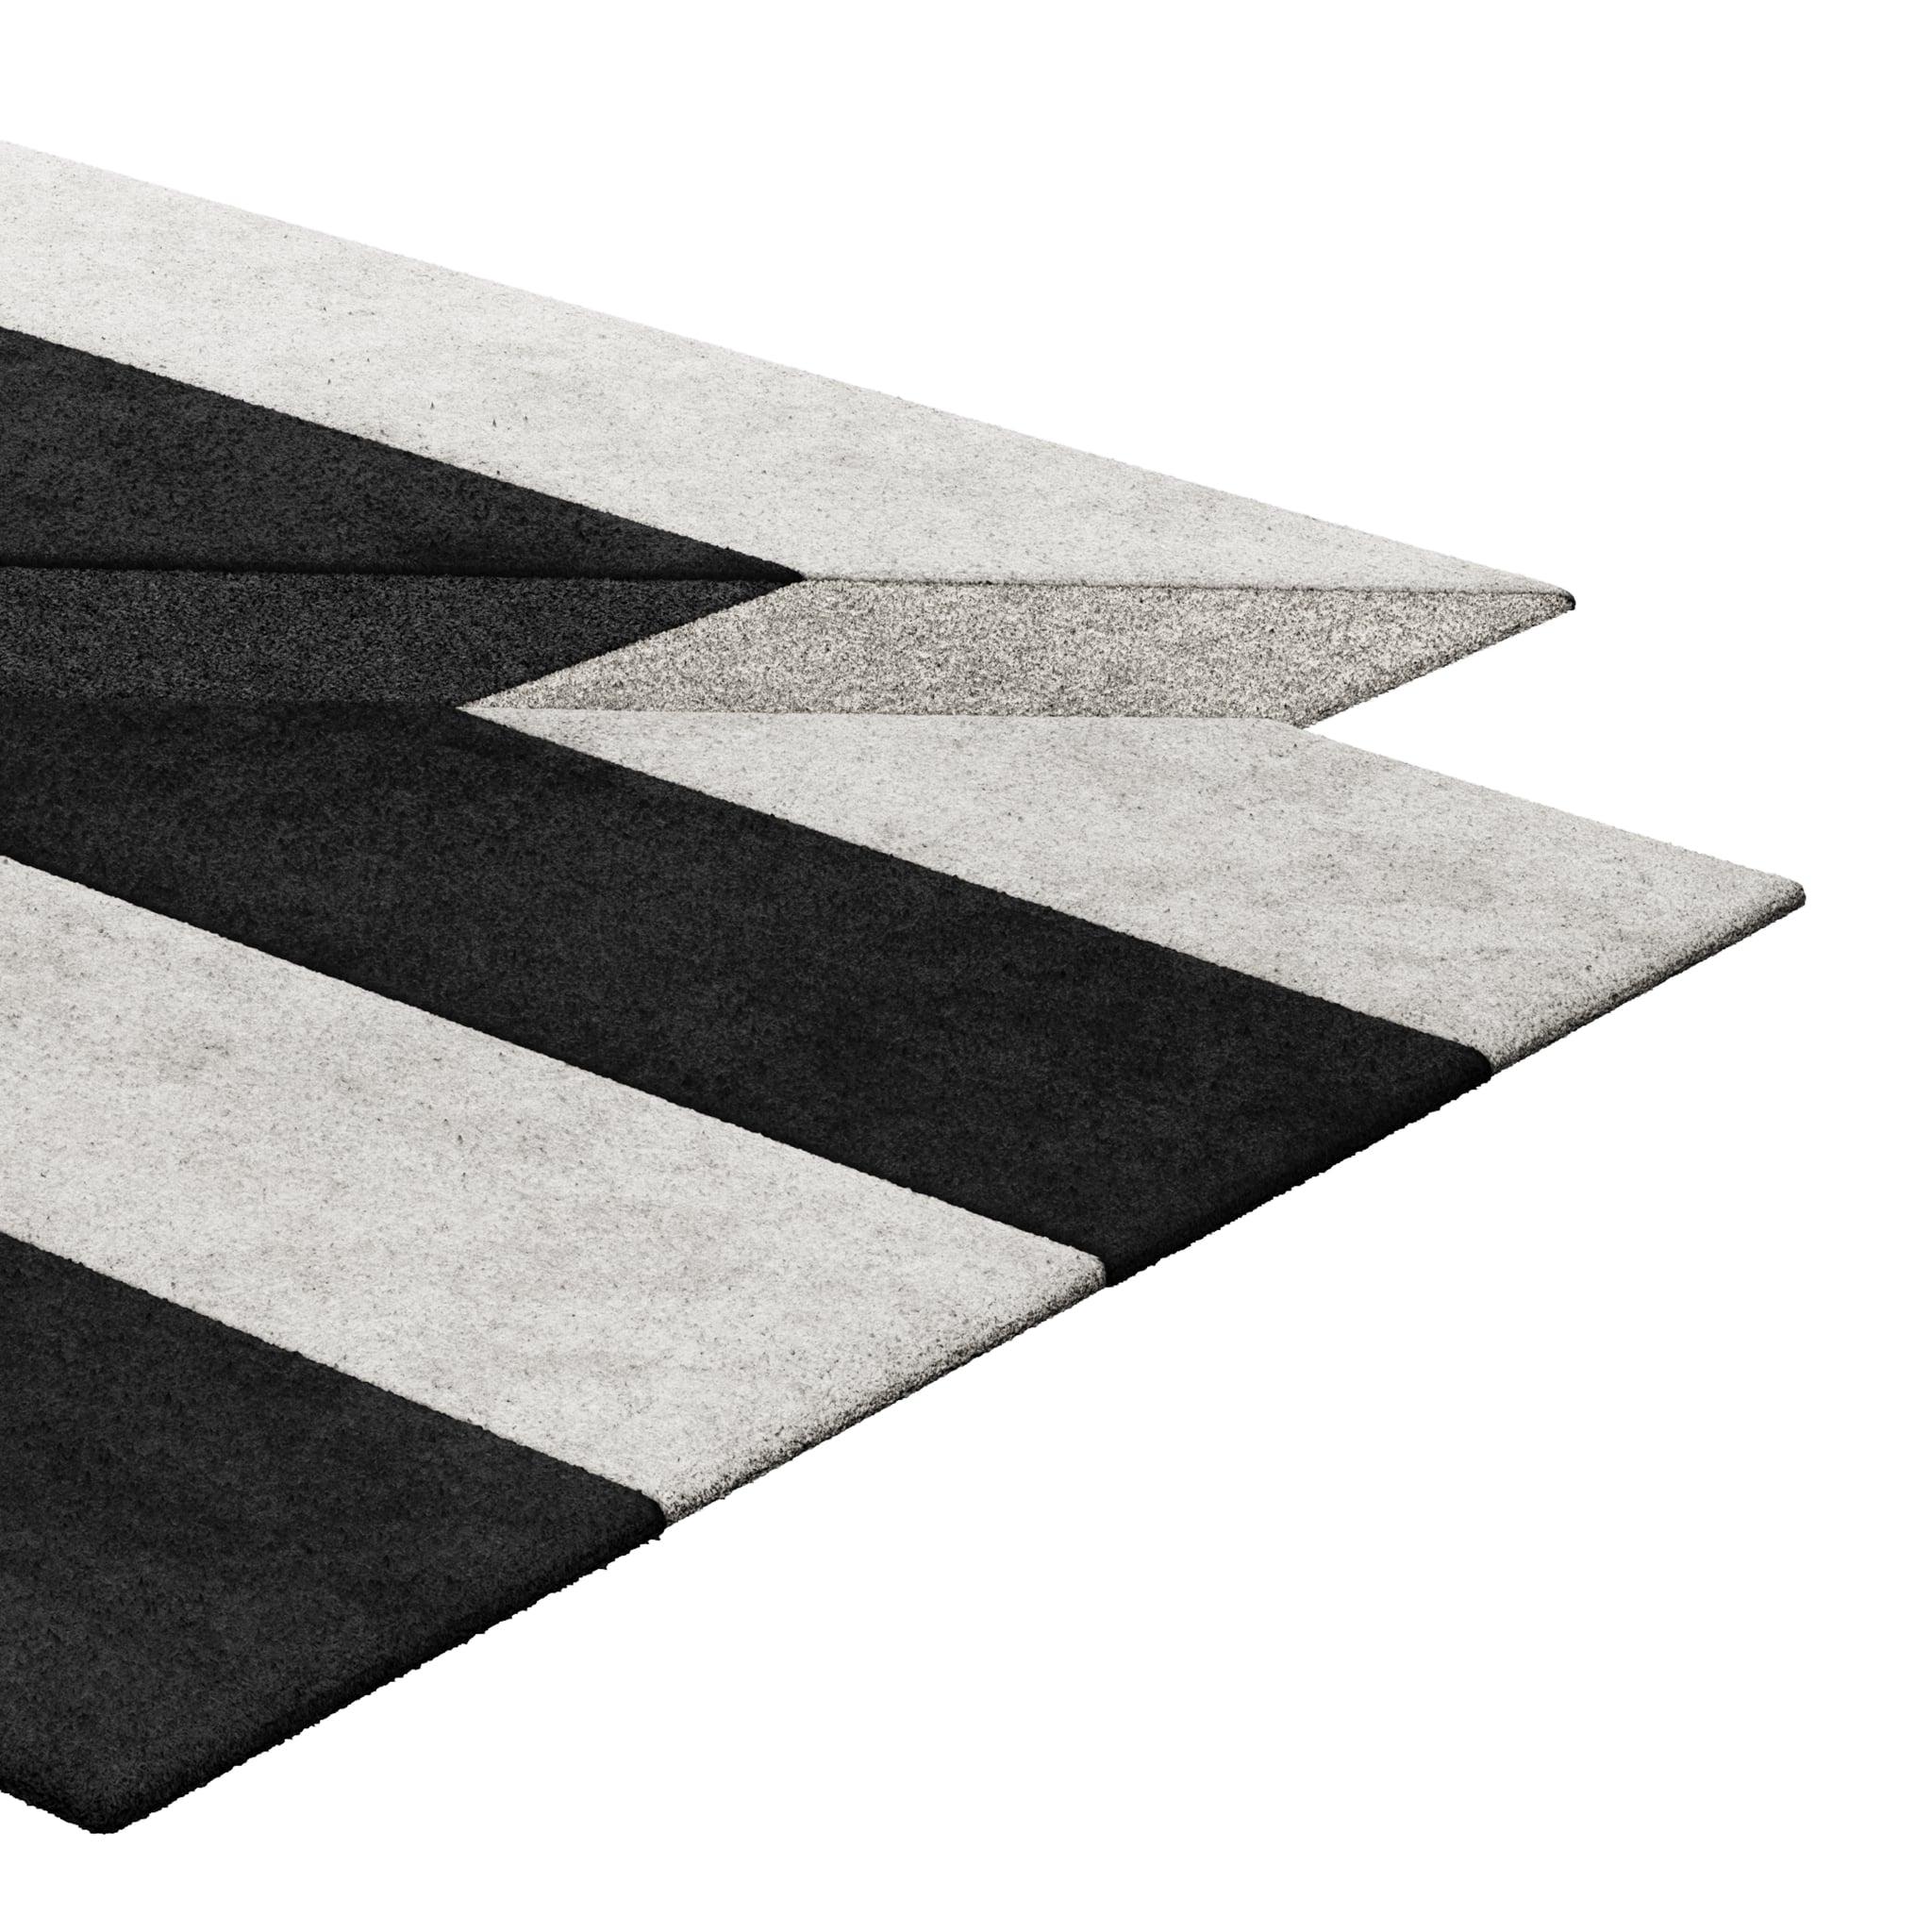 Tapis Retro #010 ist ein Retro-Teppich mit unregelmäßiger Form und monochromen Farbtönen. Inspiriert von architektonischen Linien, setzt dieser geometrische Teppich in jedem Wohnbereich ein Zeichen.

Mit einer 3D-Tufting-Technik, die Schnitt- und